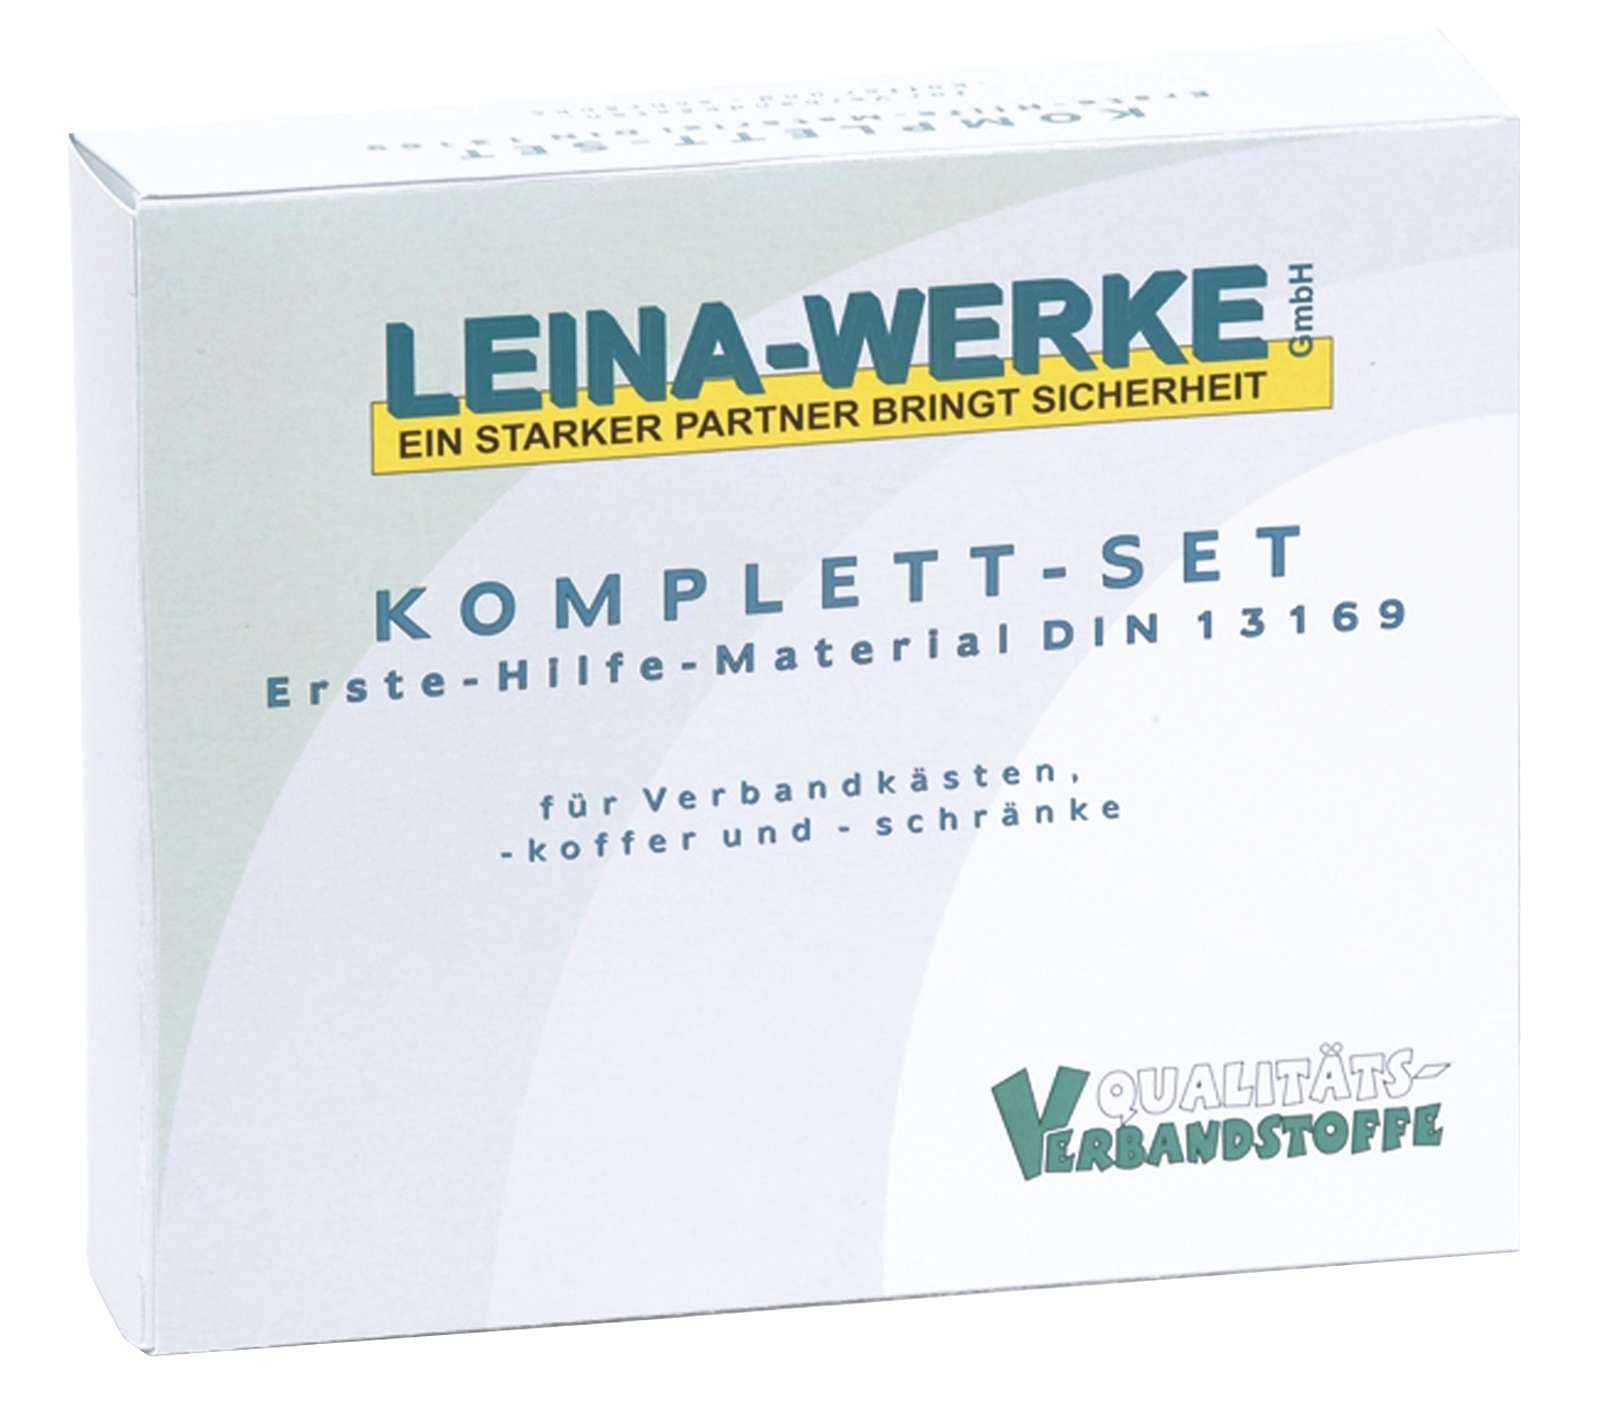 LEINAWERKE 24021 first aid supplies DIN 13157 in plastic bag, in folding box 1 pc. von LEINA-WERKE